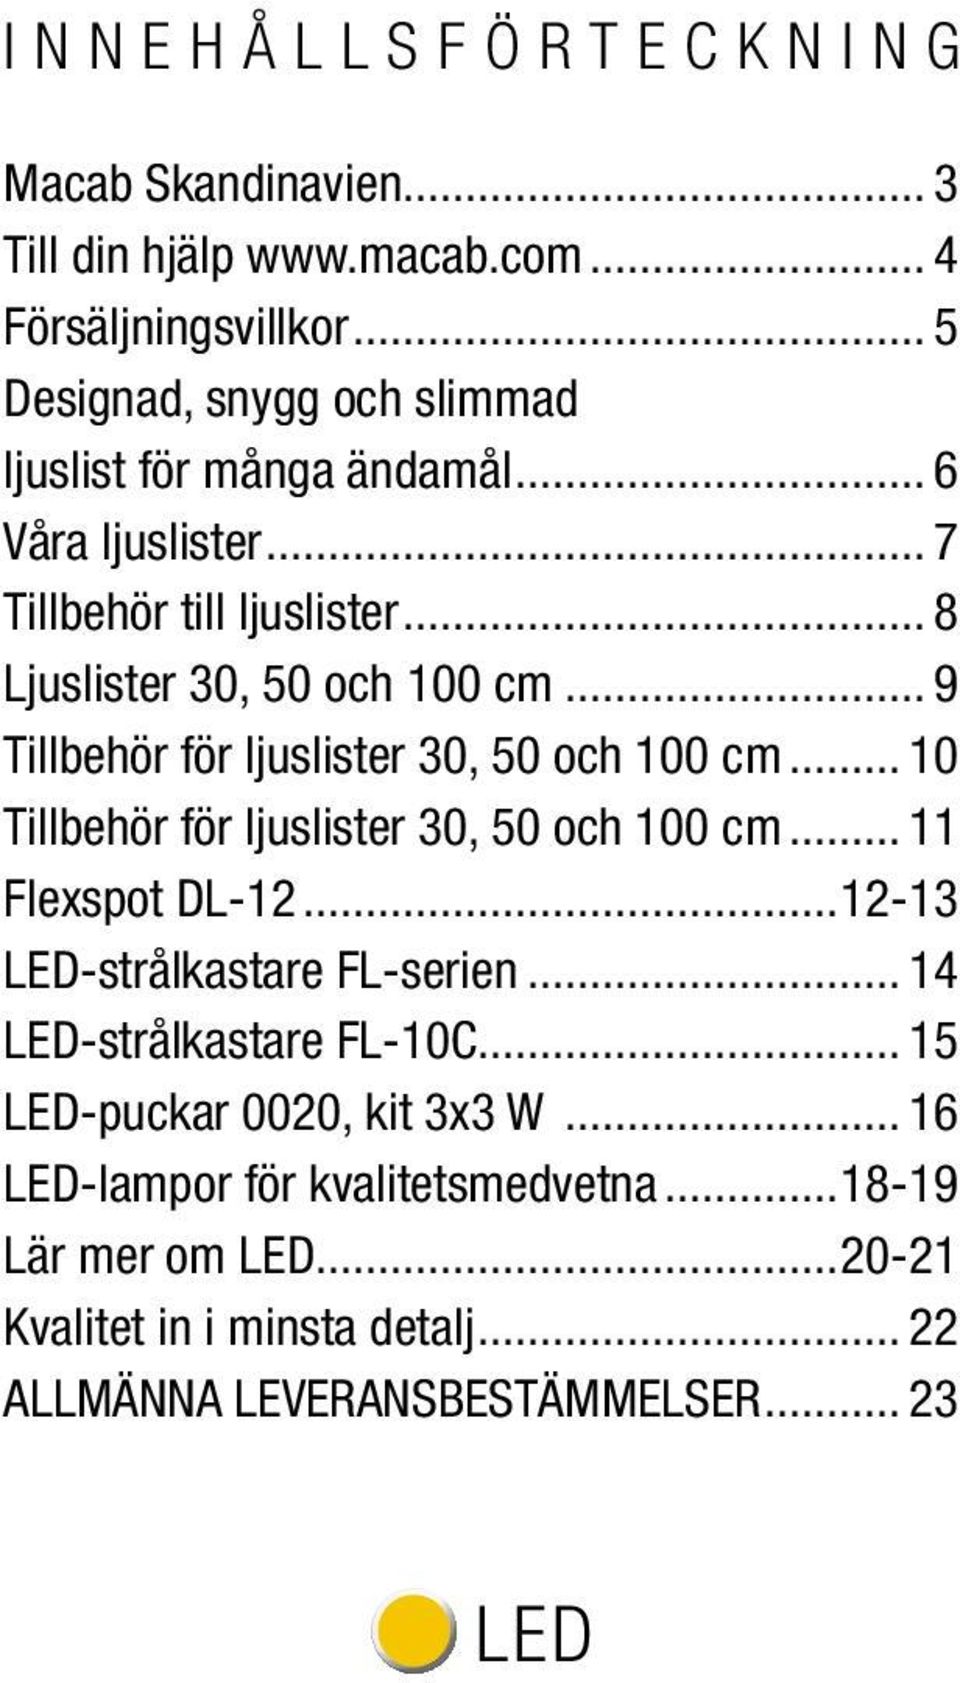 .. 10 Tillbehör för ljuslister 30, 50 och 100 cm... 11 Flexspot DL-12...12-13 LED-strålkastare FL-serien... 14 LED-strålkastare FL-10C.